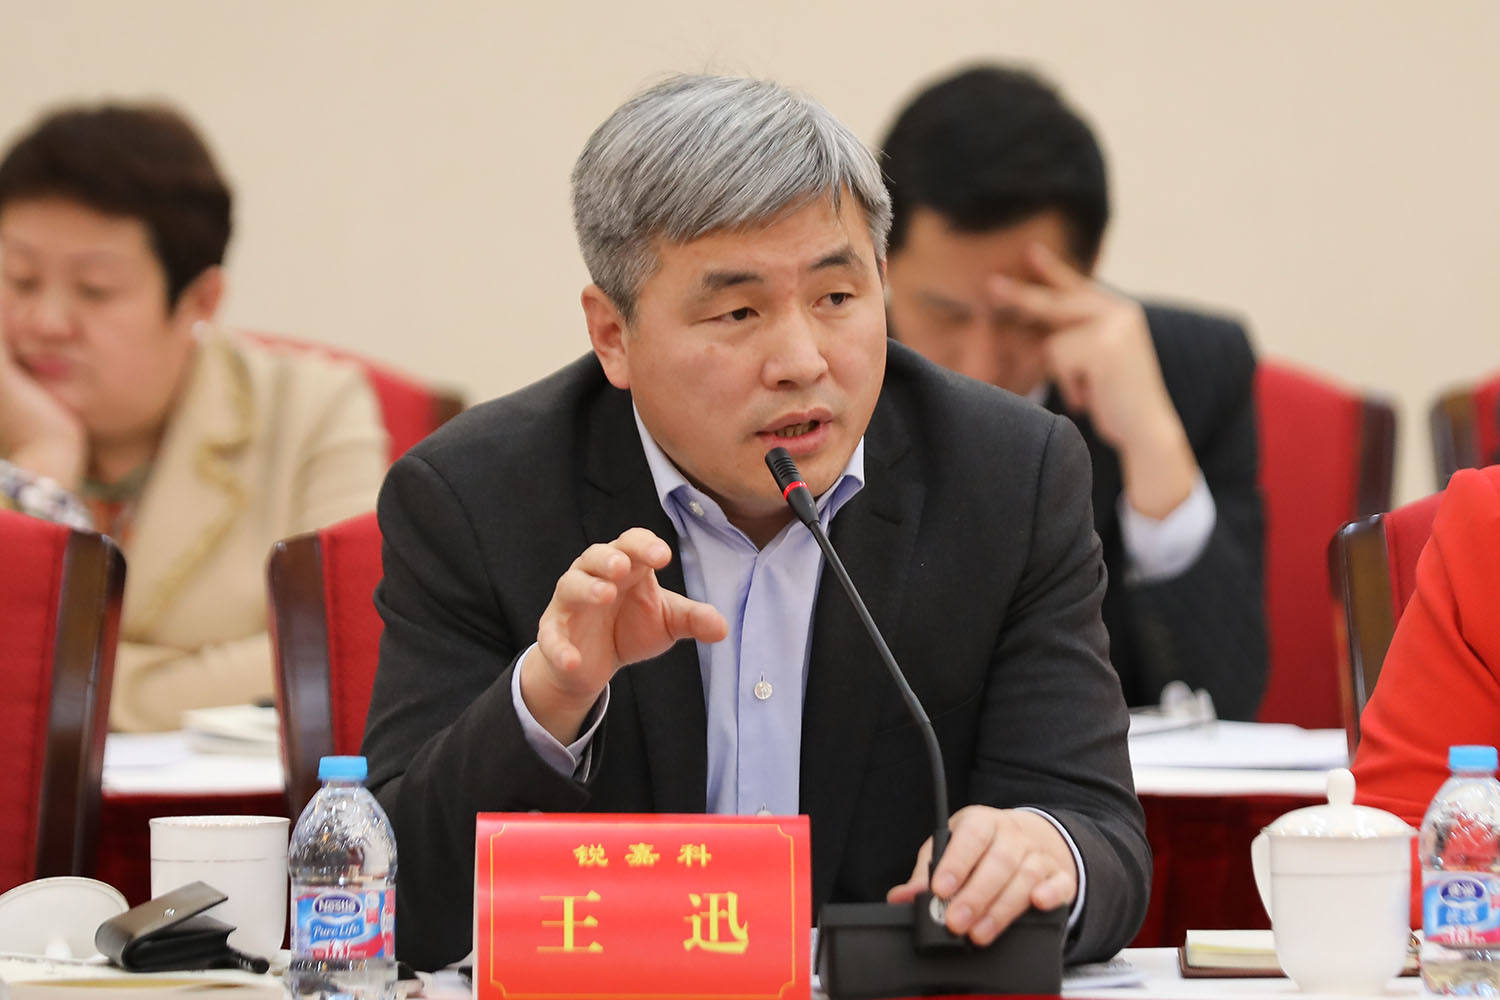 锐嘉科集团董事长王迅认为,在企业技术创新上,应推动各类创新资源向